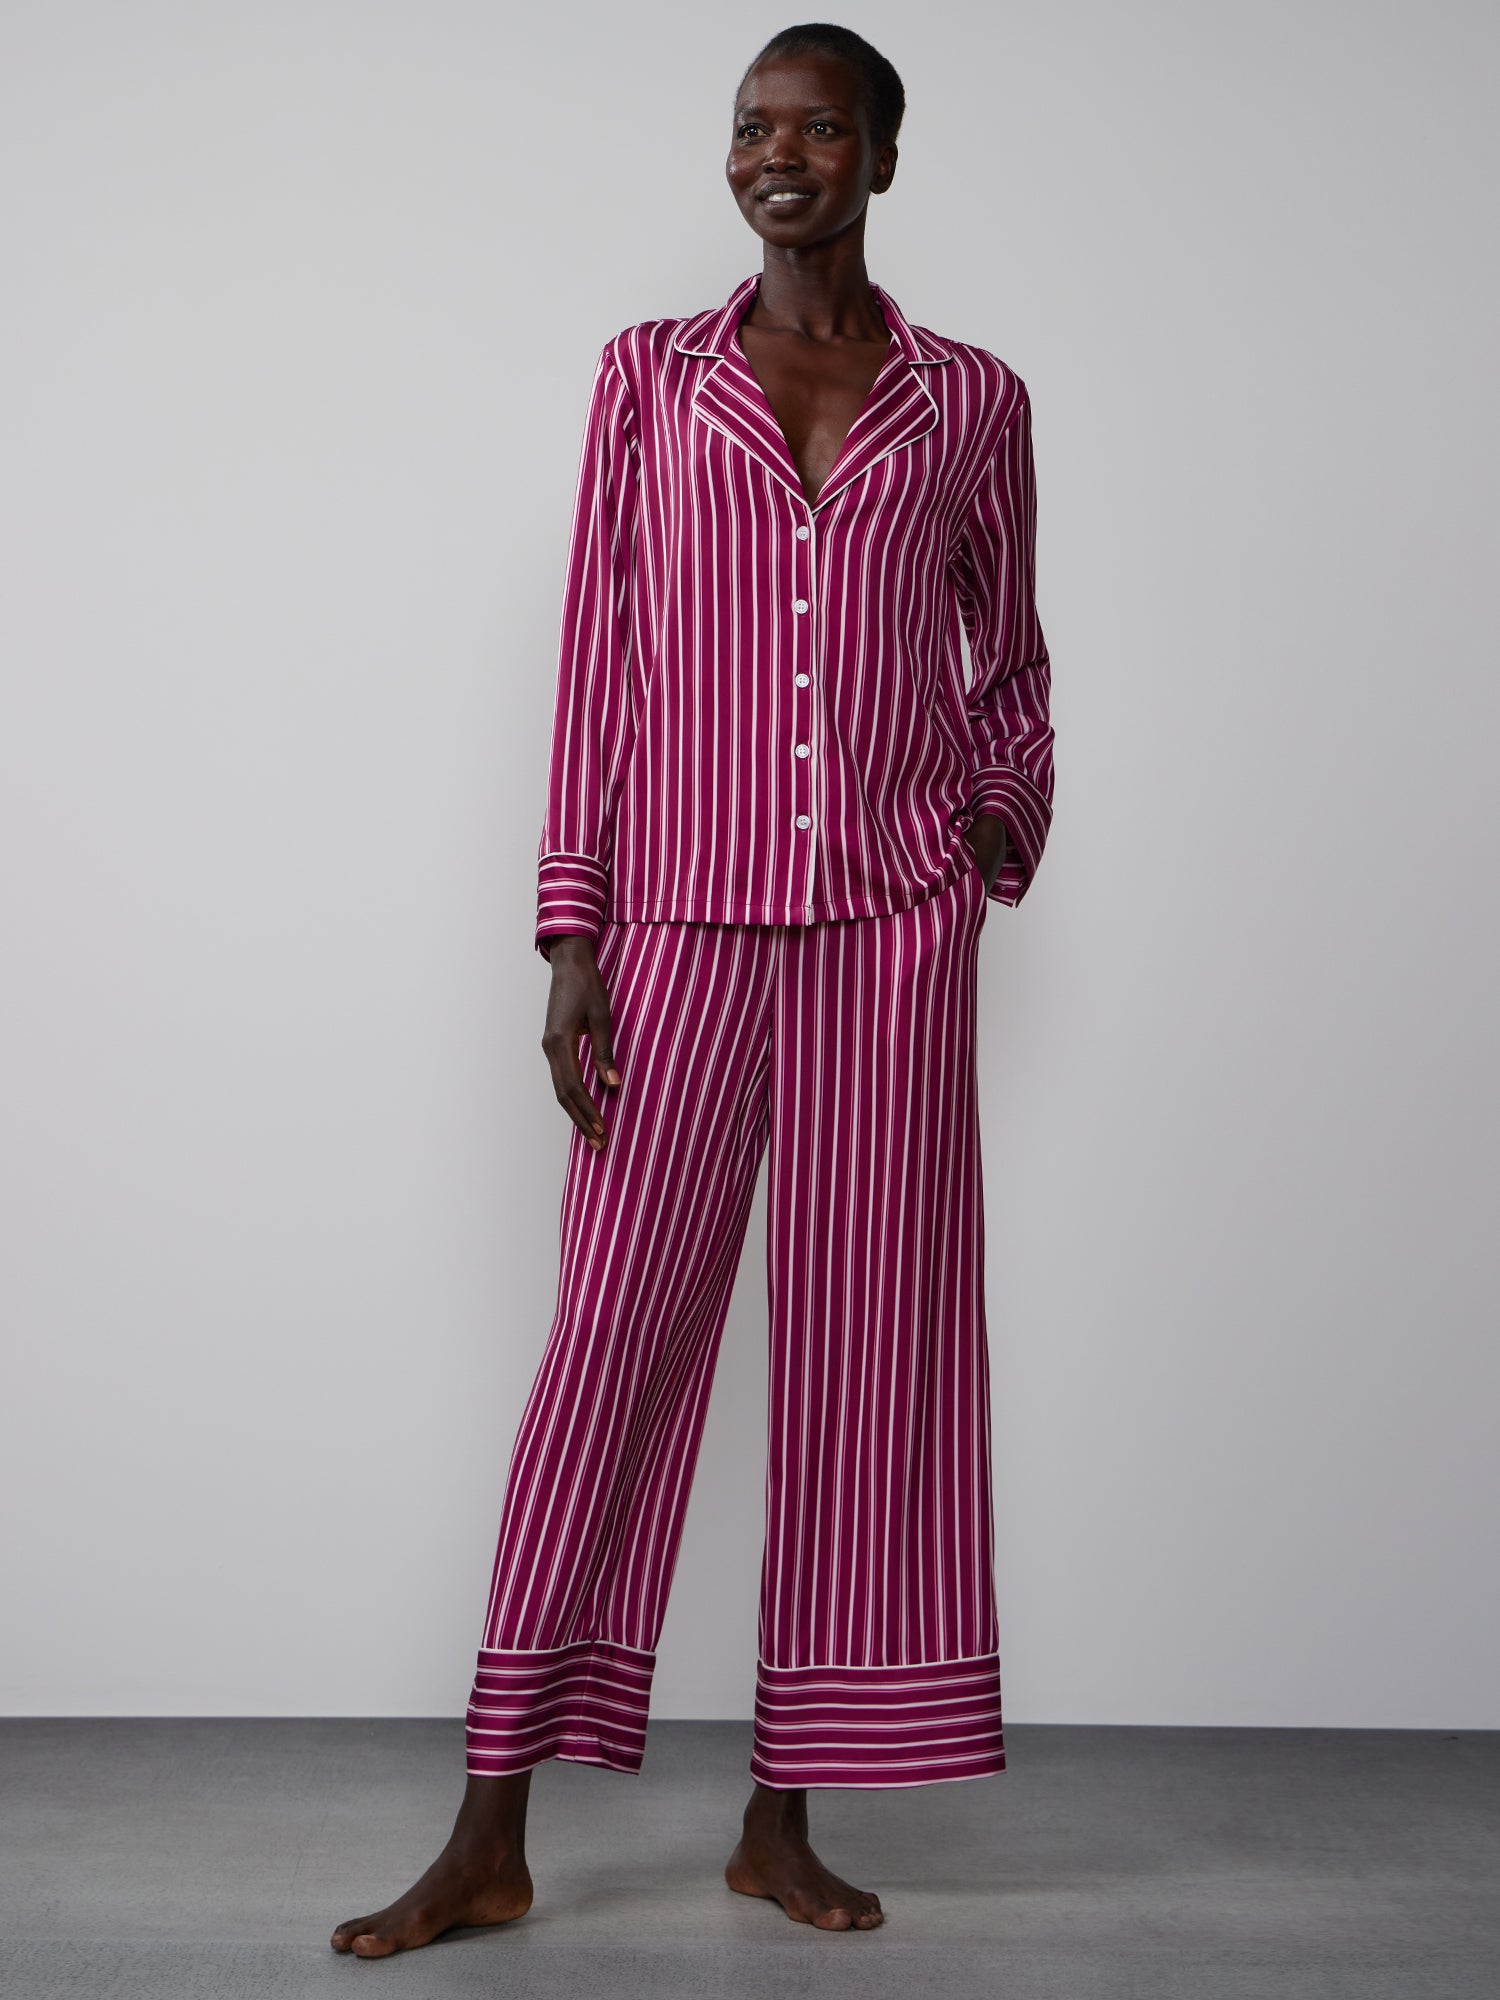 Stripe Pj Set, Nightwear & Pajamas